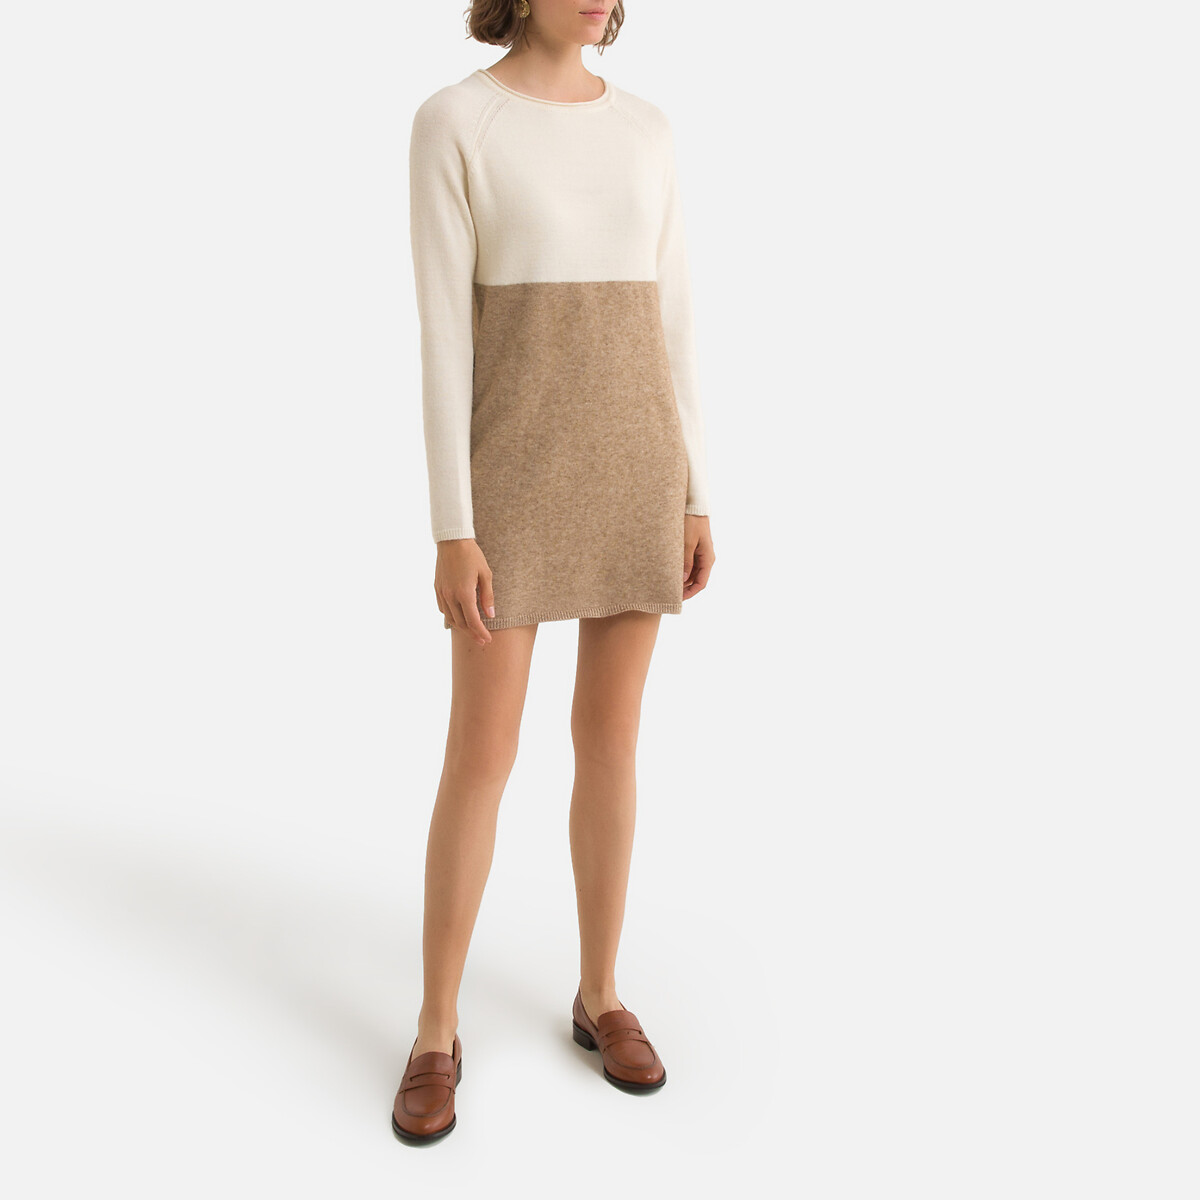 Платье-пуловер LaRedoute Трехцветное из плотного трикотажа S бежевый, размер S - фото 2